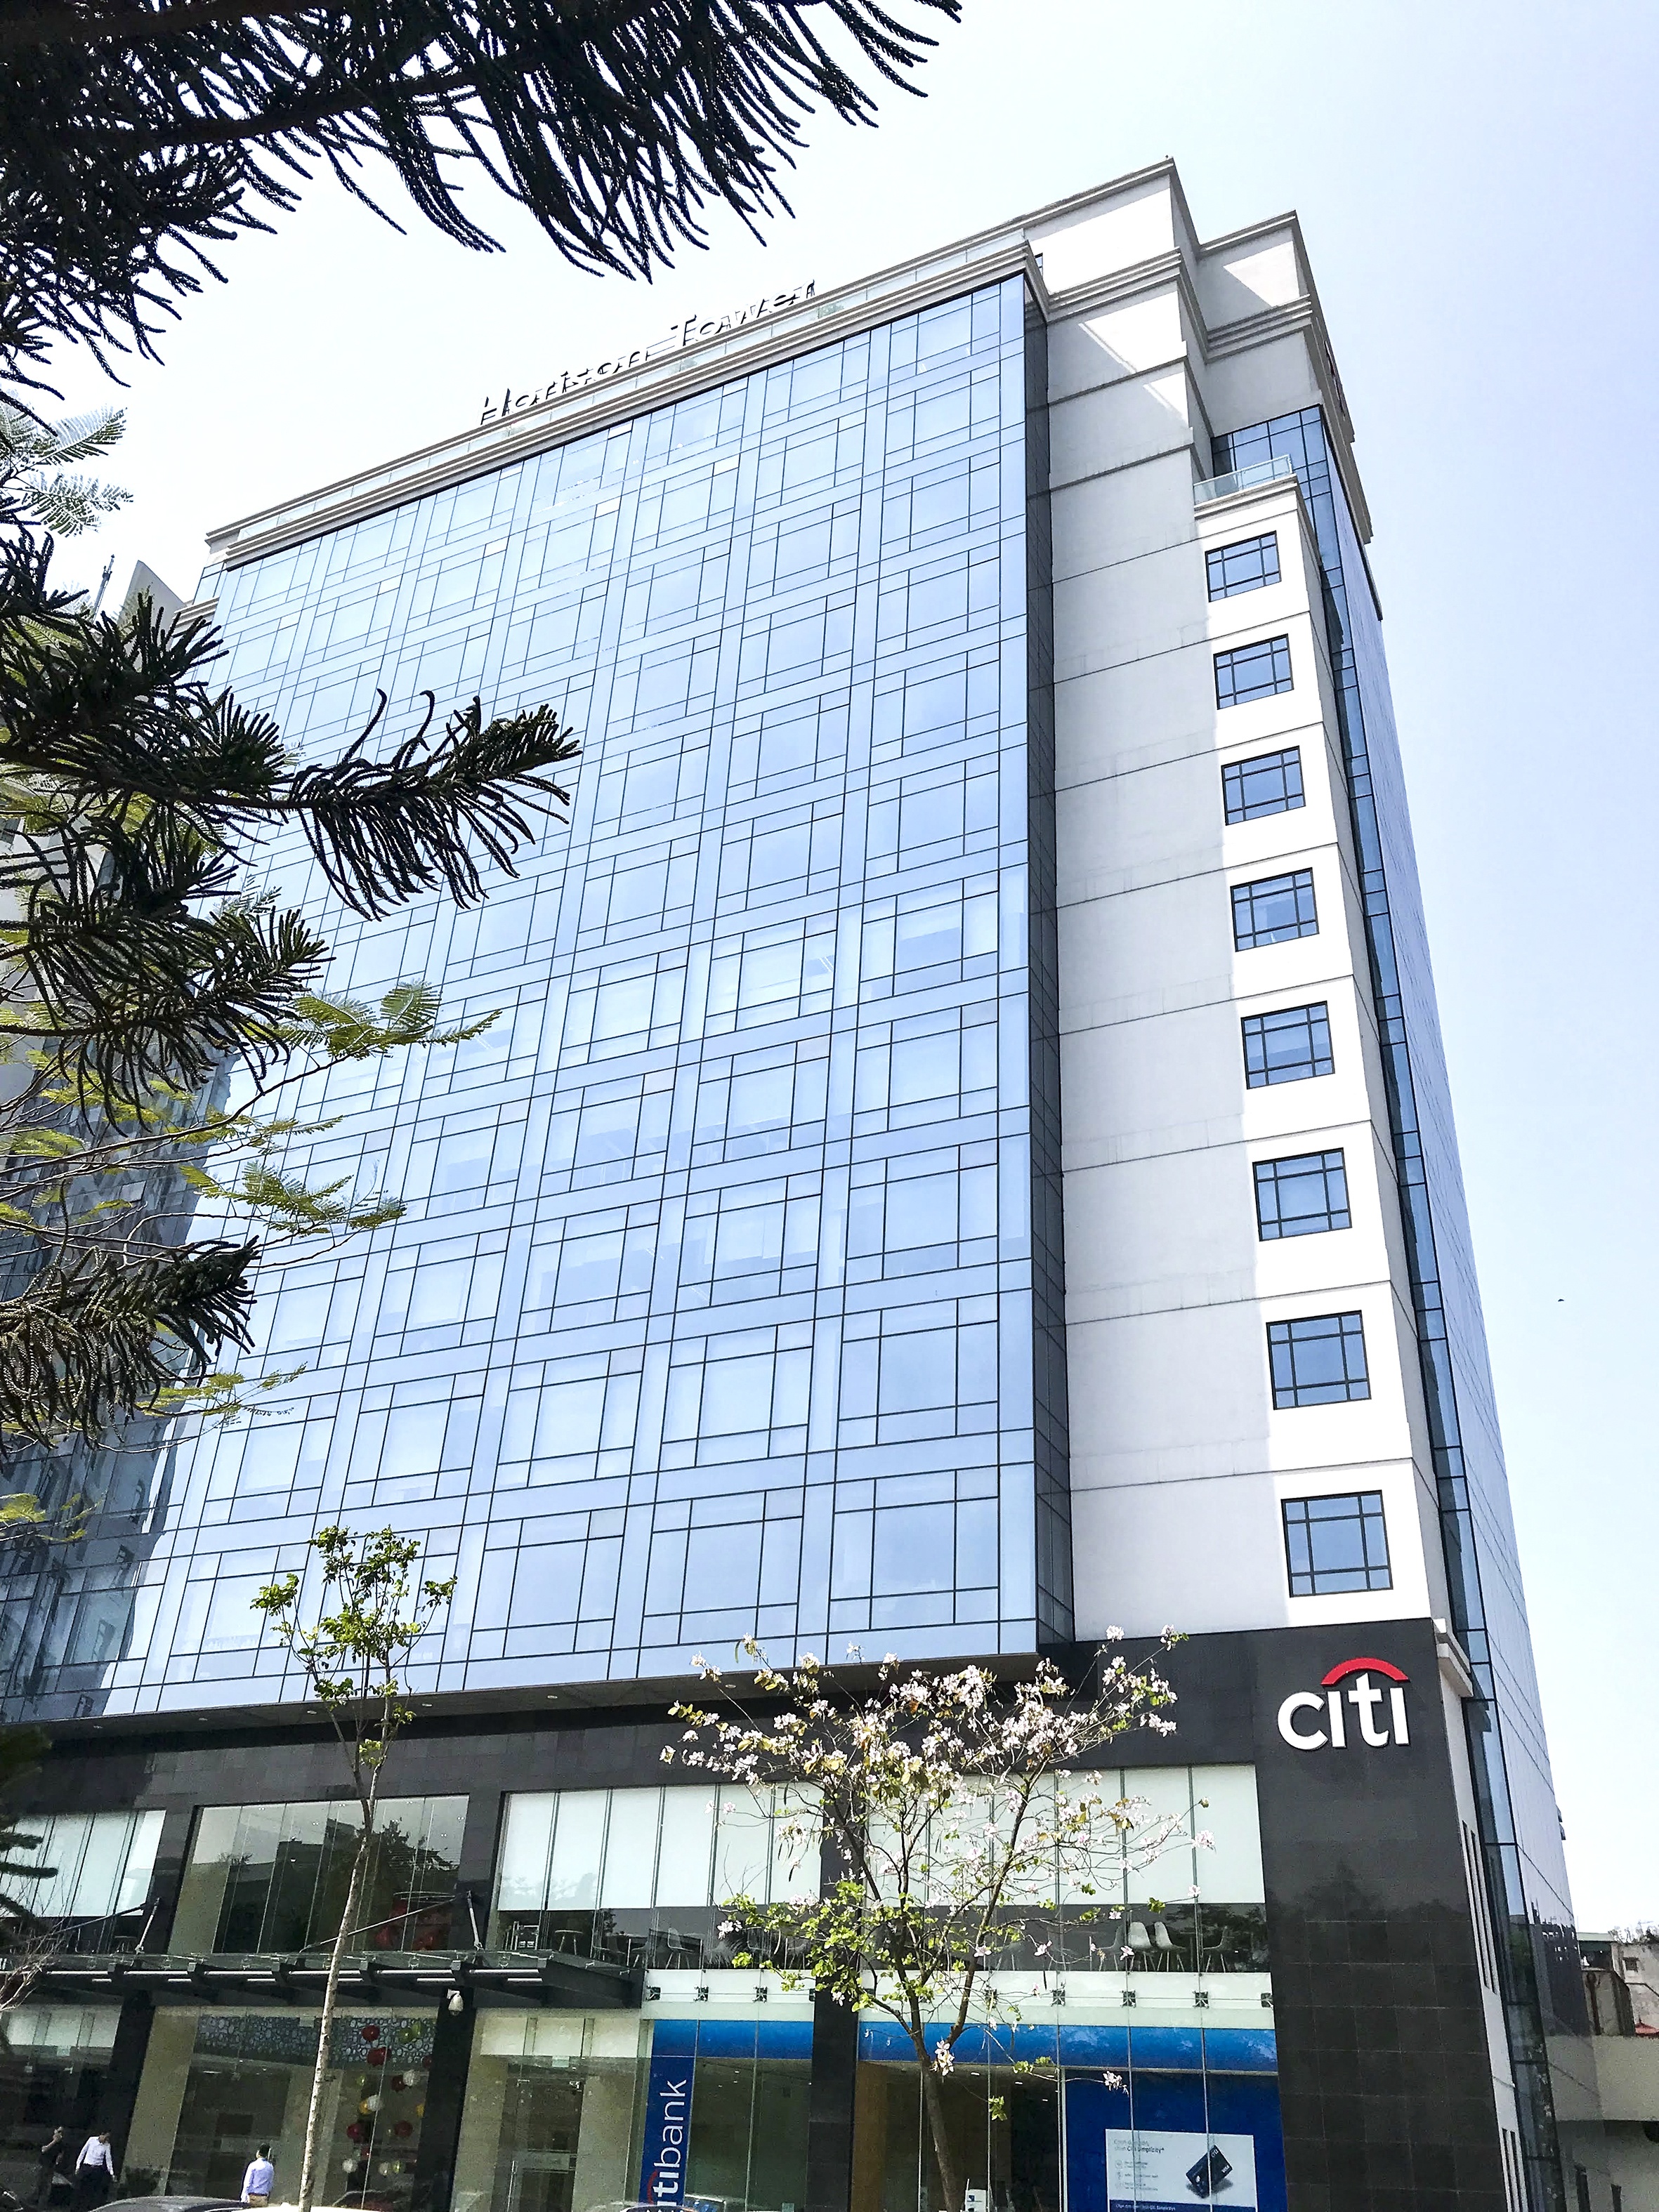 Tạp chí Global Finance vinh danh Citi là Ngân hàng điện tử cho Doanh nghiệp tốt nhất châu Á - Thái Bình Dương năm 2021